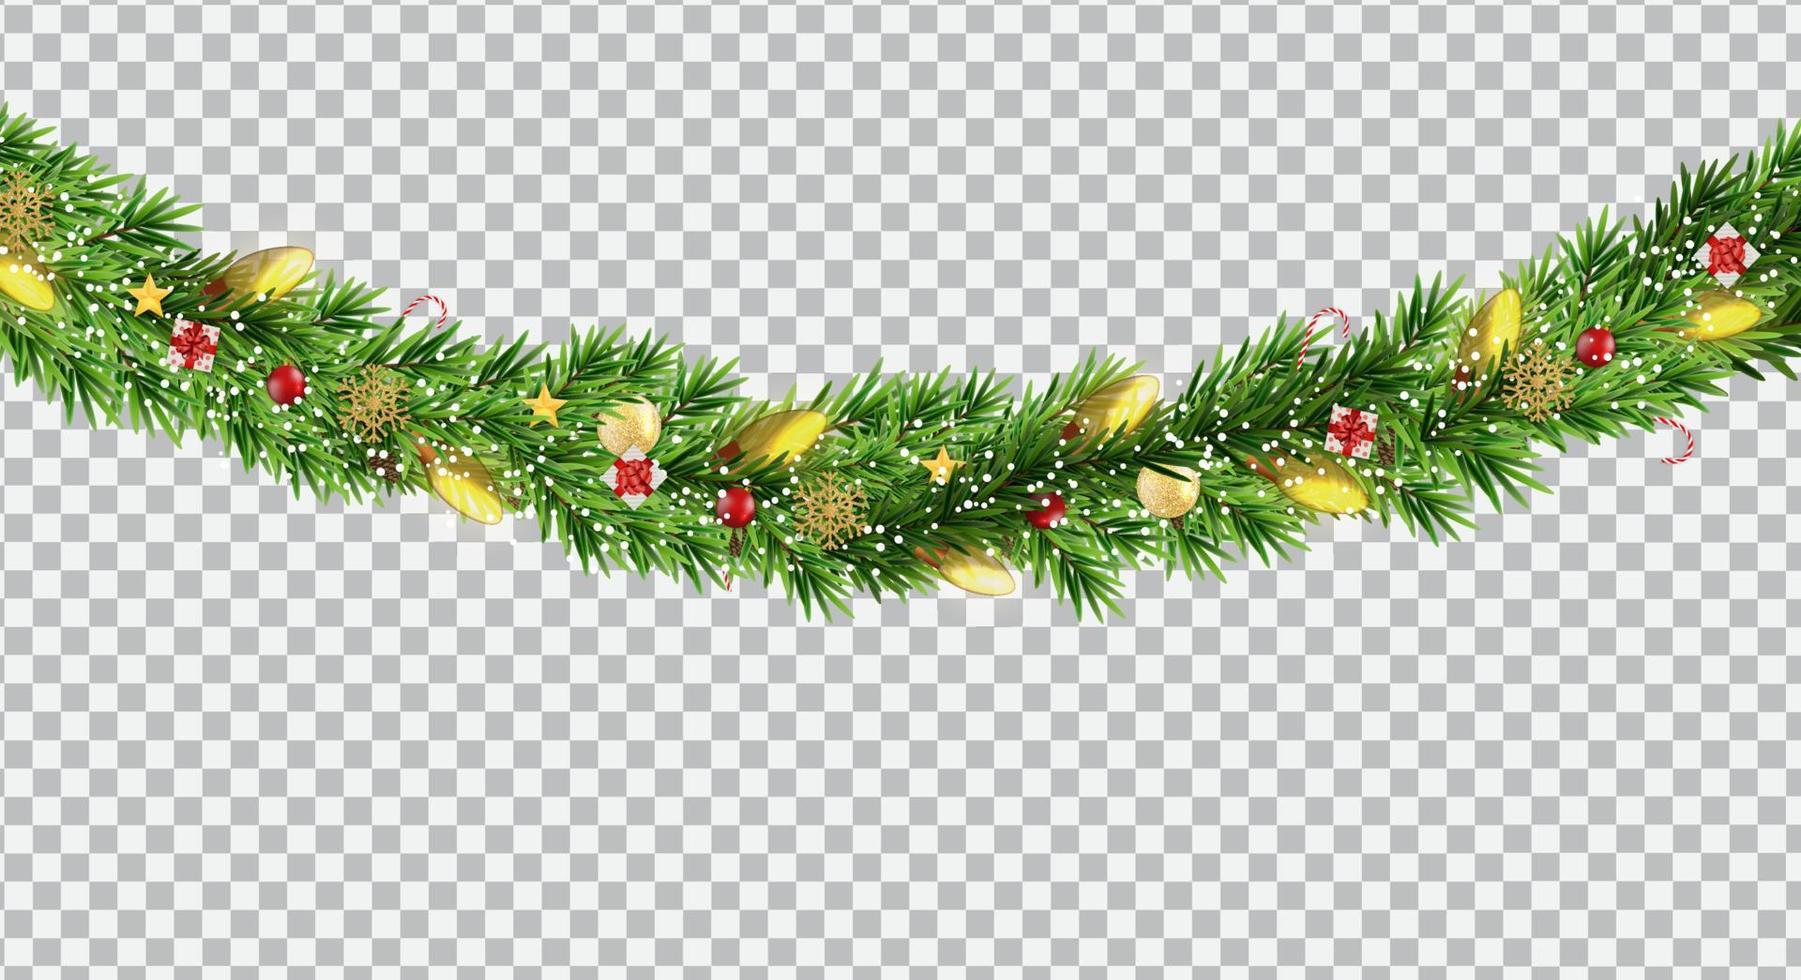 breite Weihnachtsgrenzengirlande aus Tannenzweigen, Kugeln, Tannenzapfen und anderen Ornamenten, einzeln auf transparentem Hintergrund. Vektor-Illustration vektor